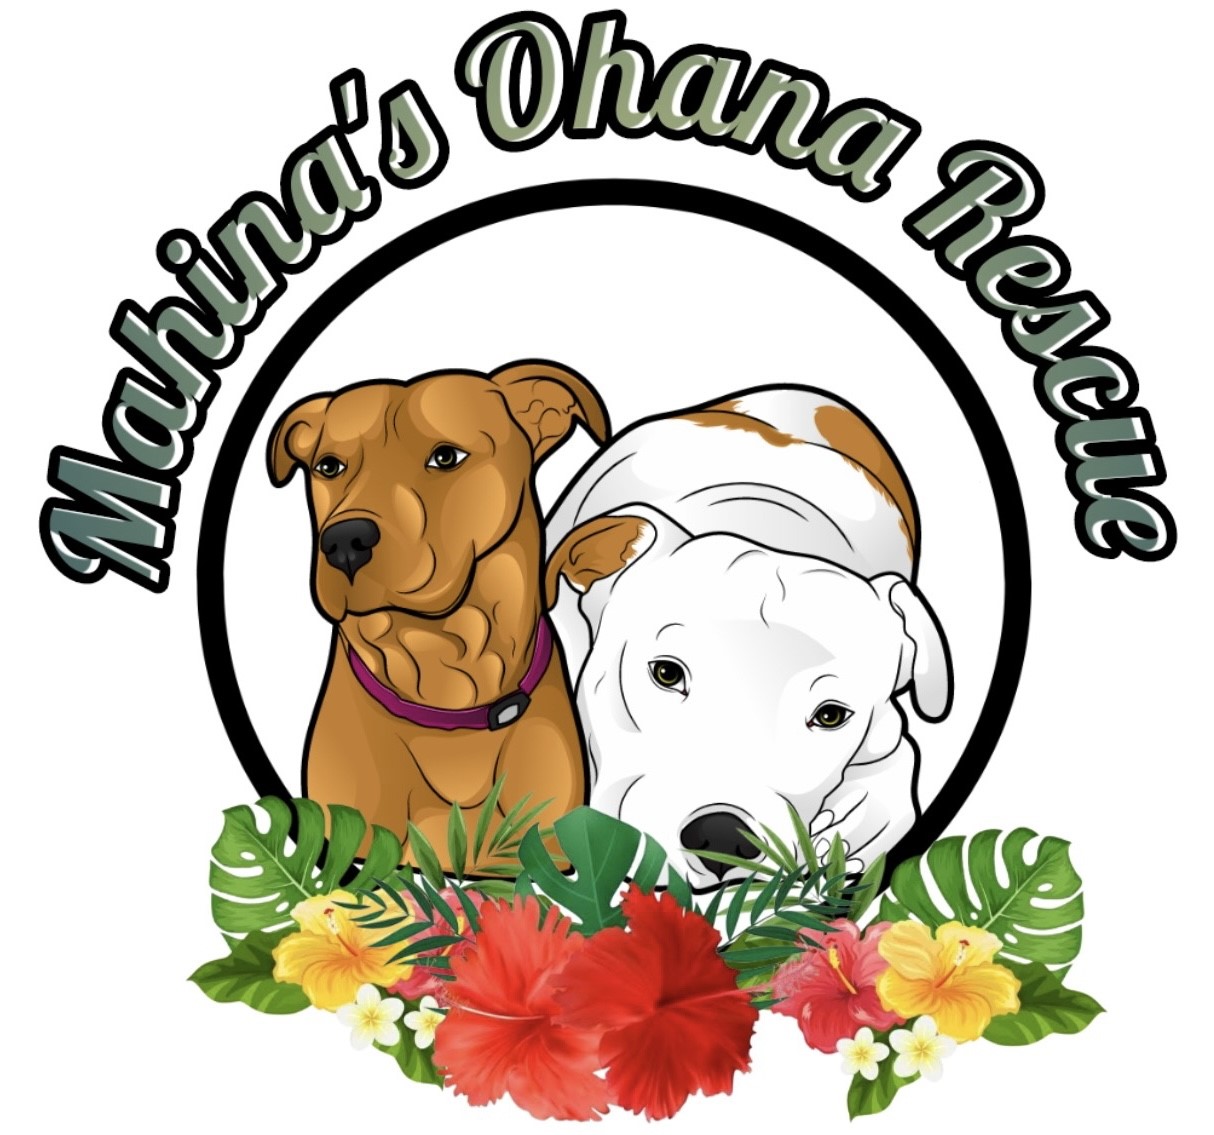 Mahina’s Ohana Rescue logo